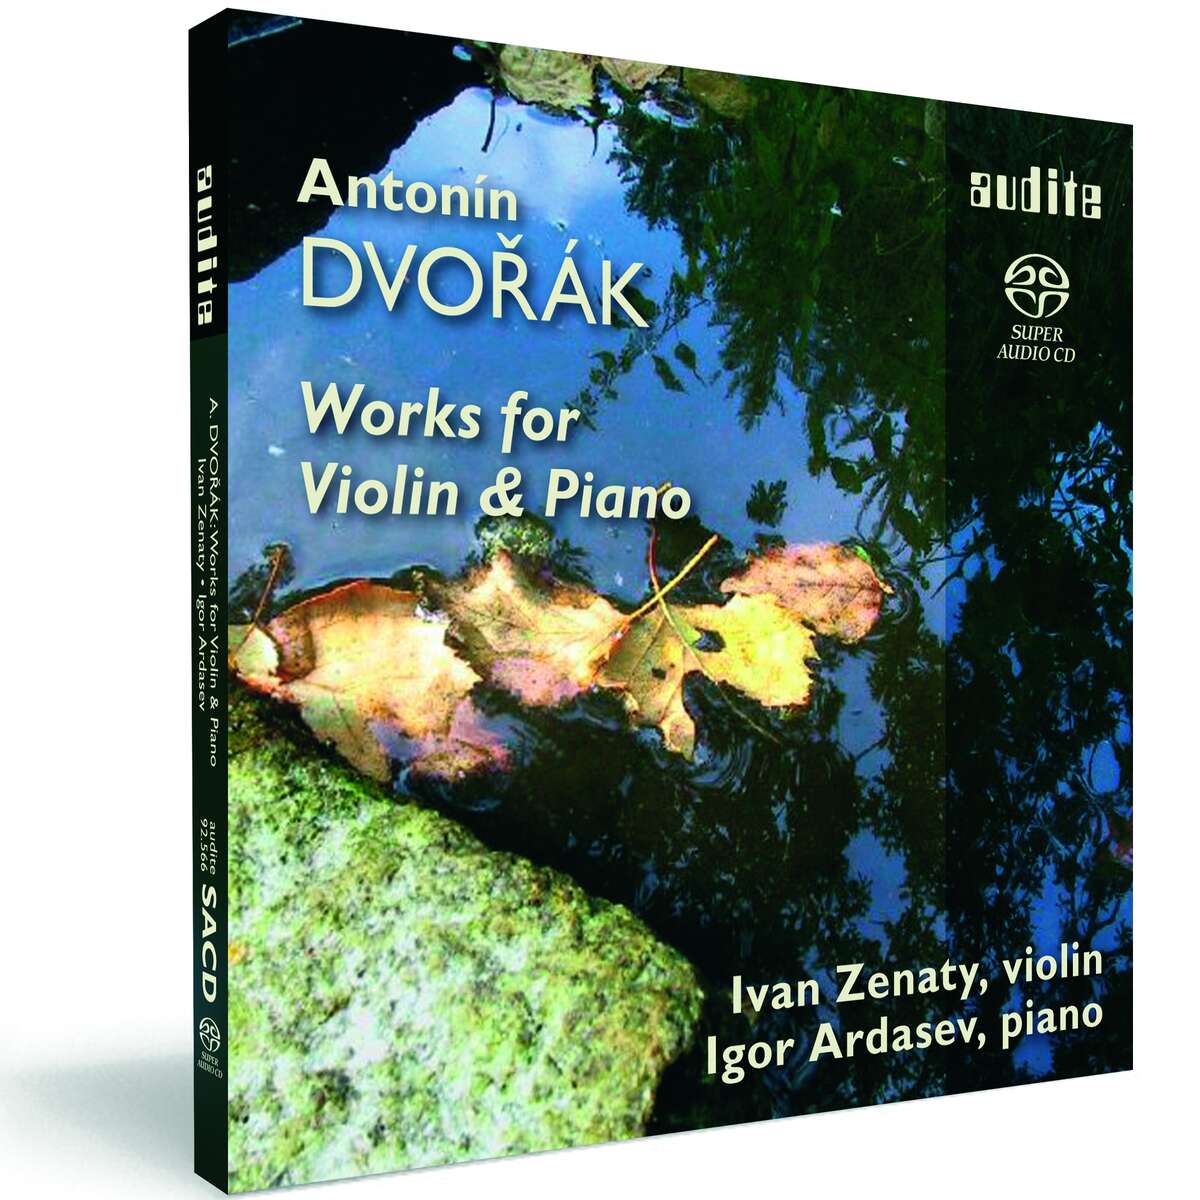 Dvorak: Works for Violin & Piano - Zenaty, Ivan (Violine) / Ardasev, Igor (Klavier)